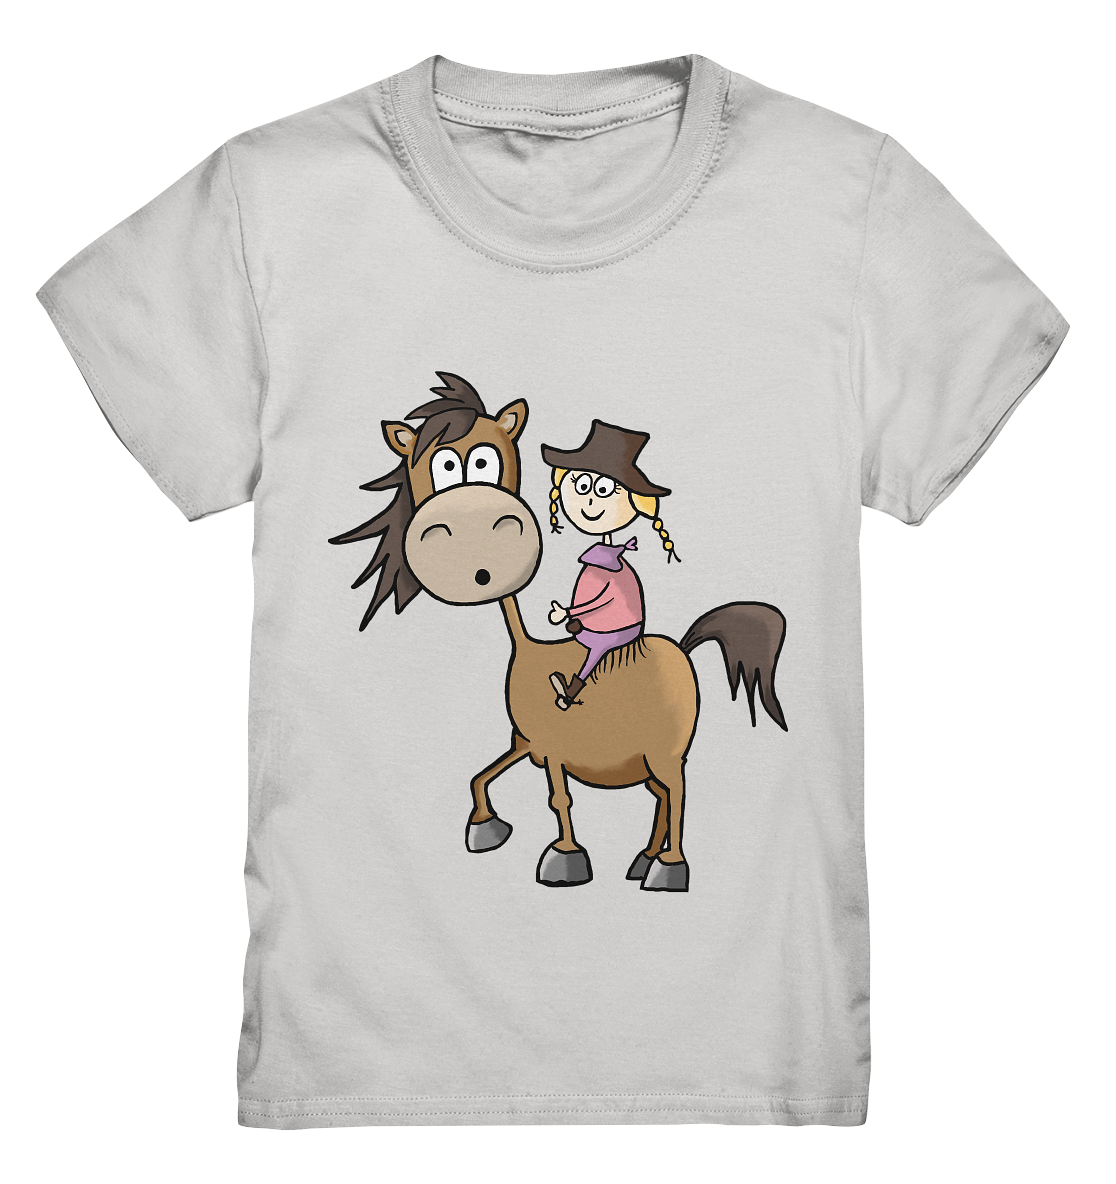 Mädchen mit Cowboyhut und Chaps auf Westernpferd - Kids Premium Shirt